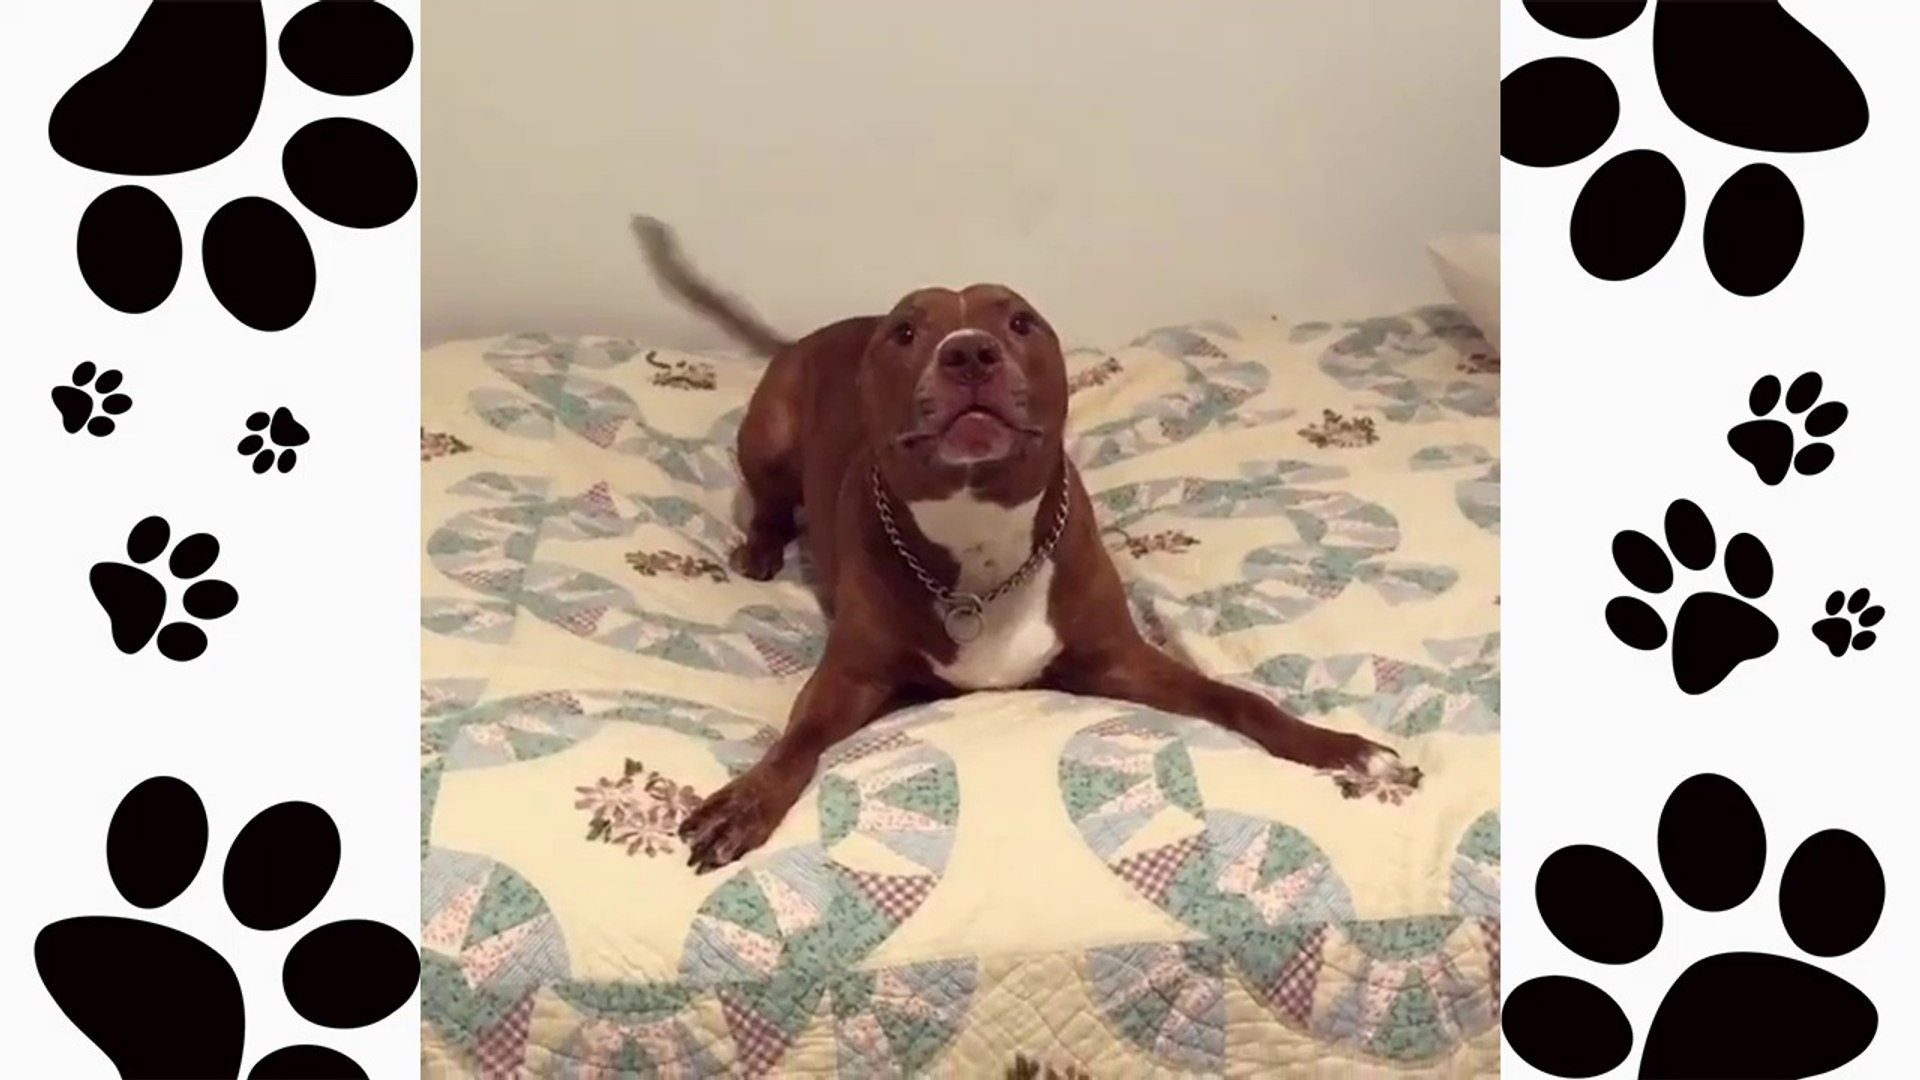 Pitbull dog funny